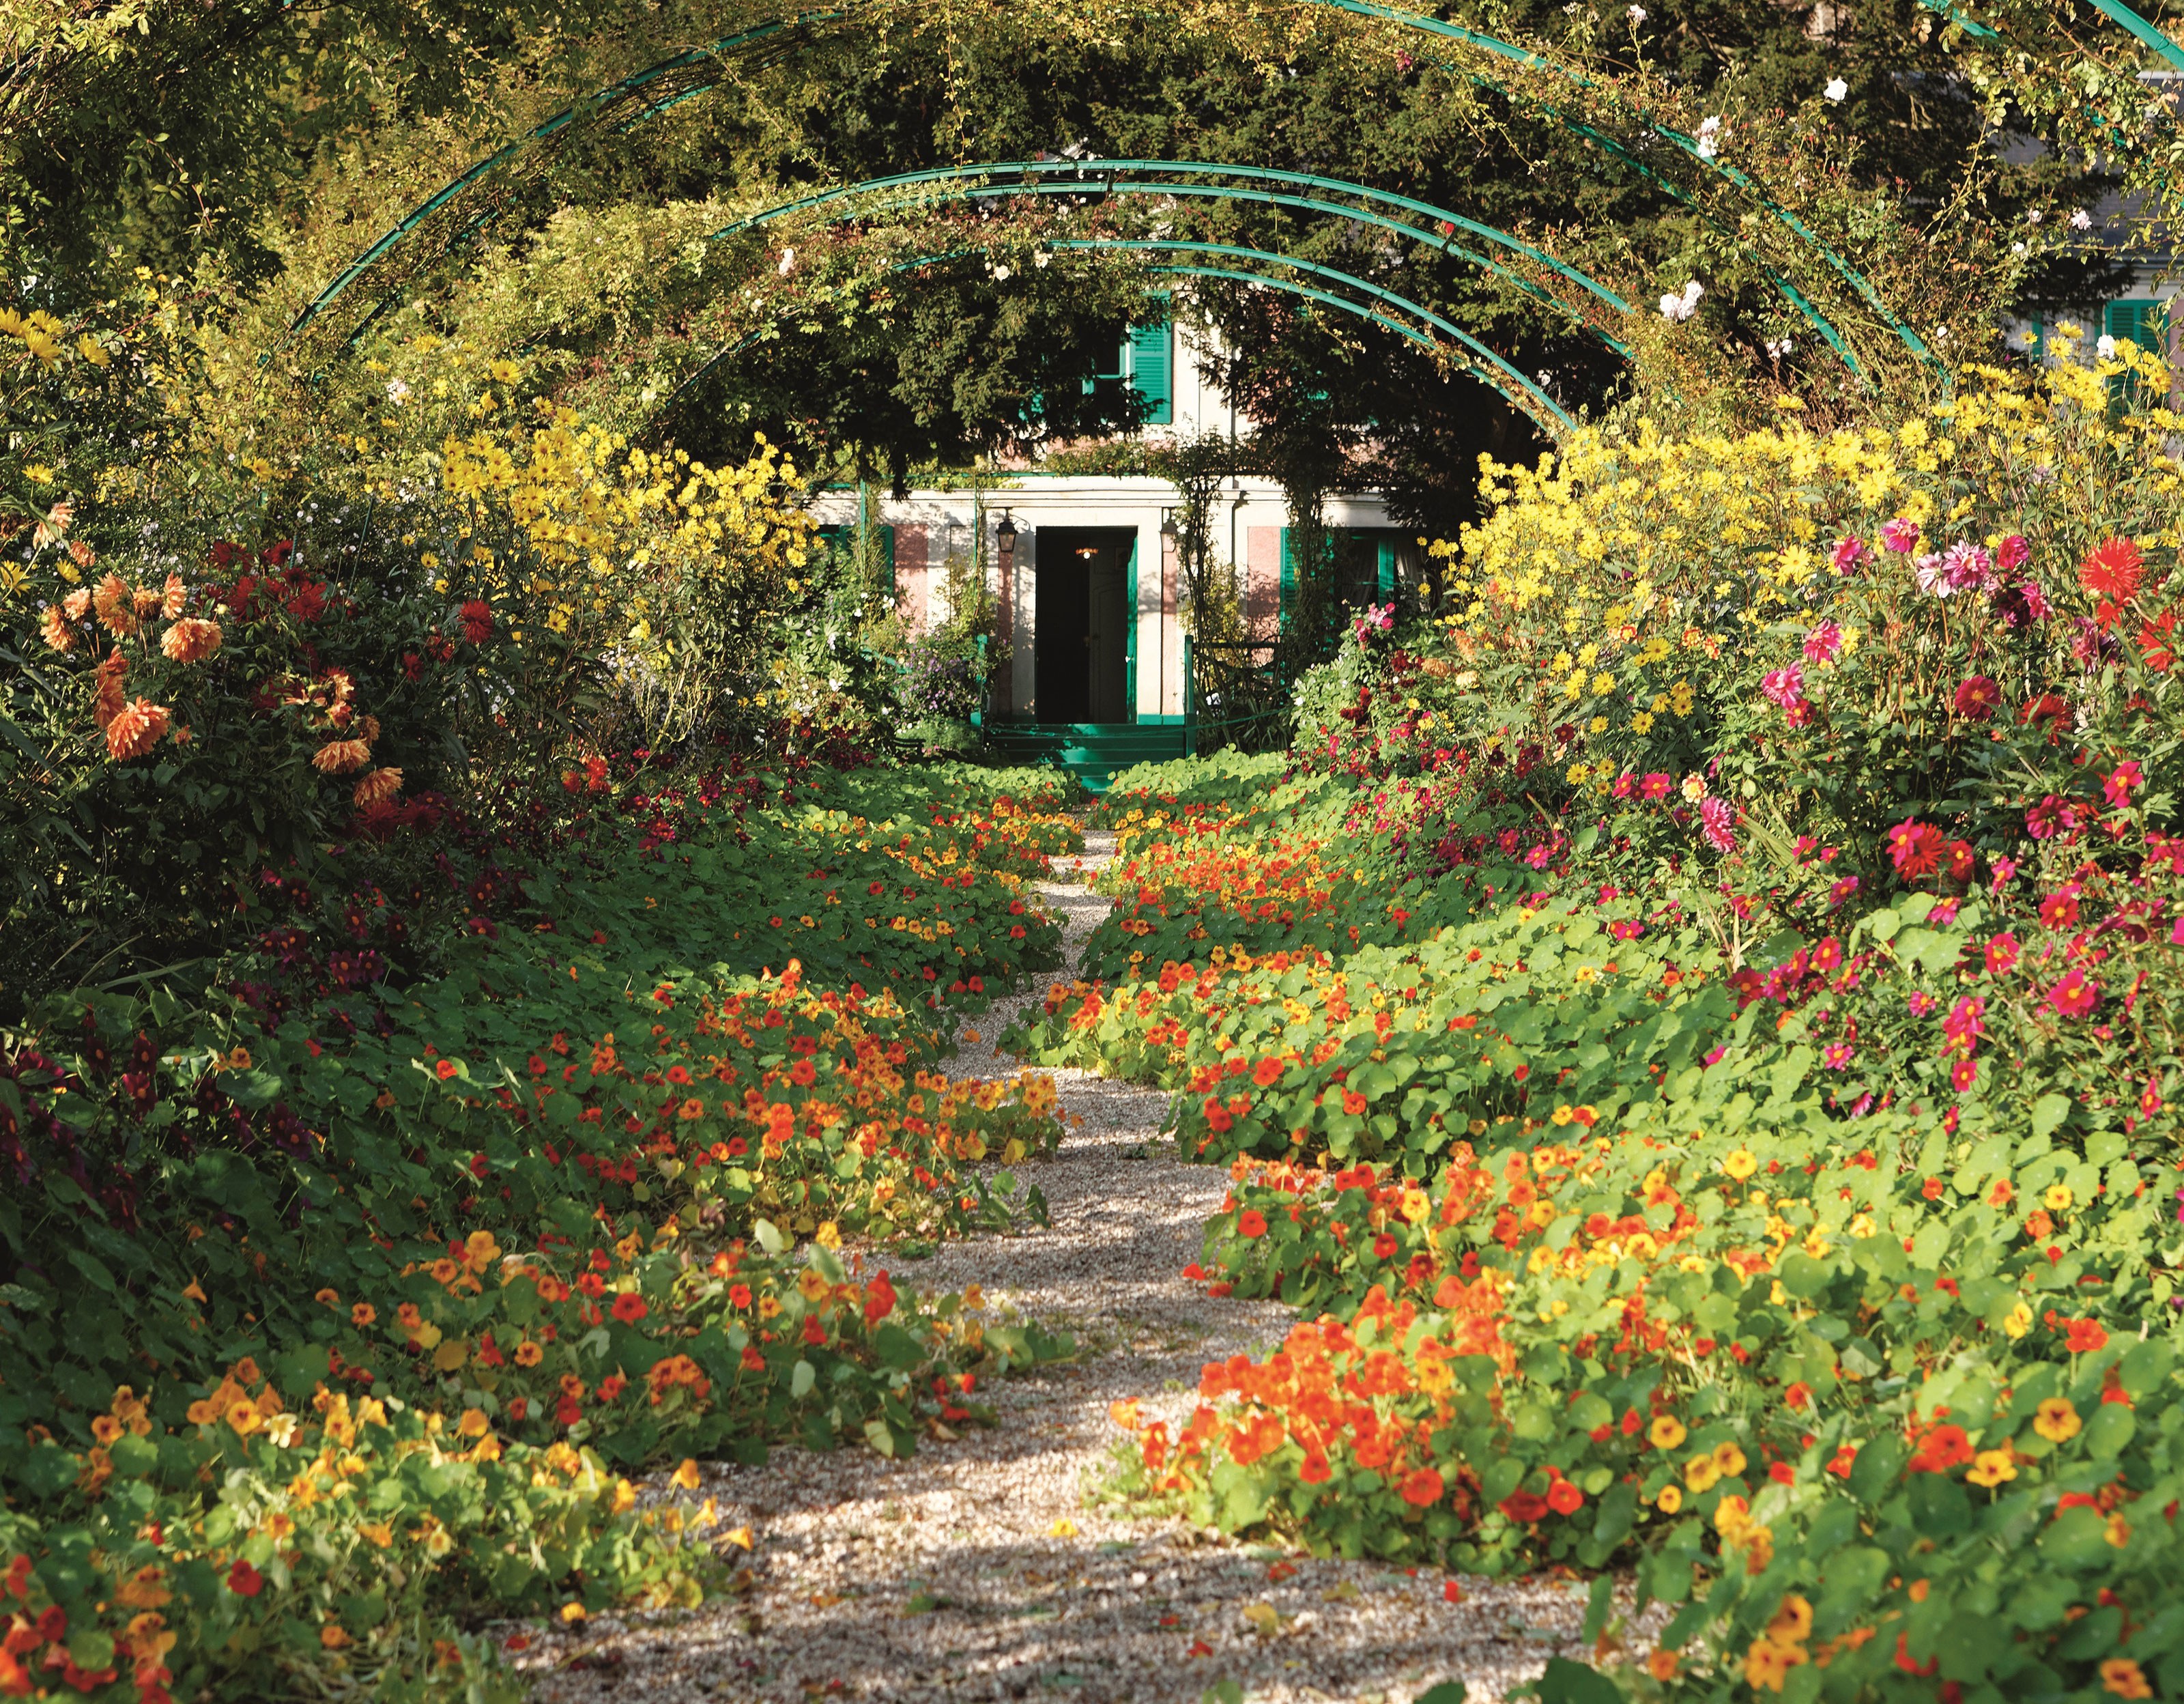 Tour Claude Monet's Gardens Photos | Architectural Digest